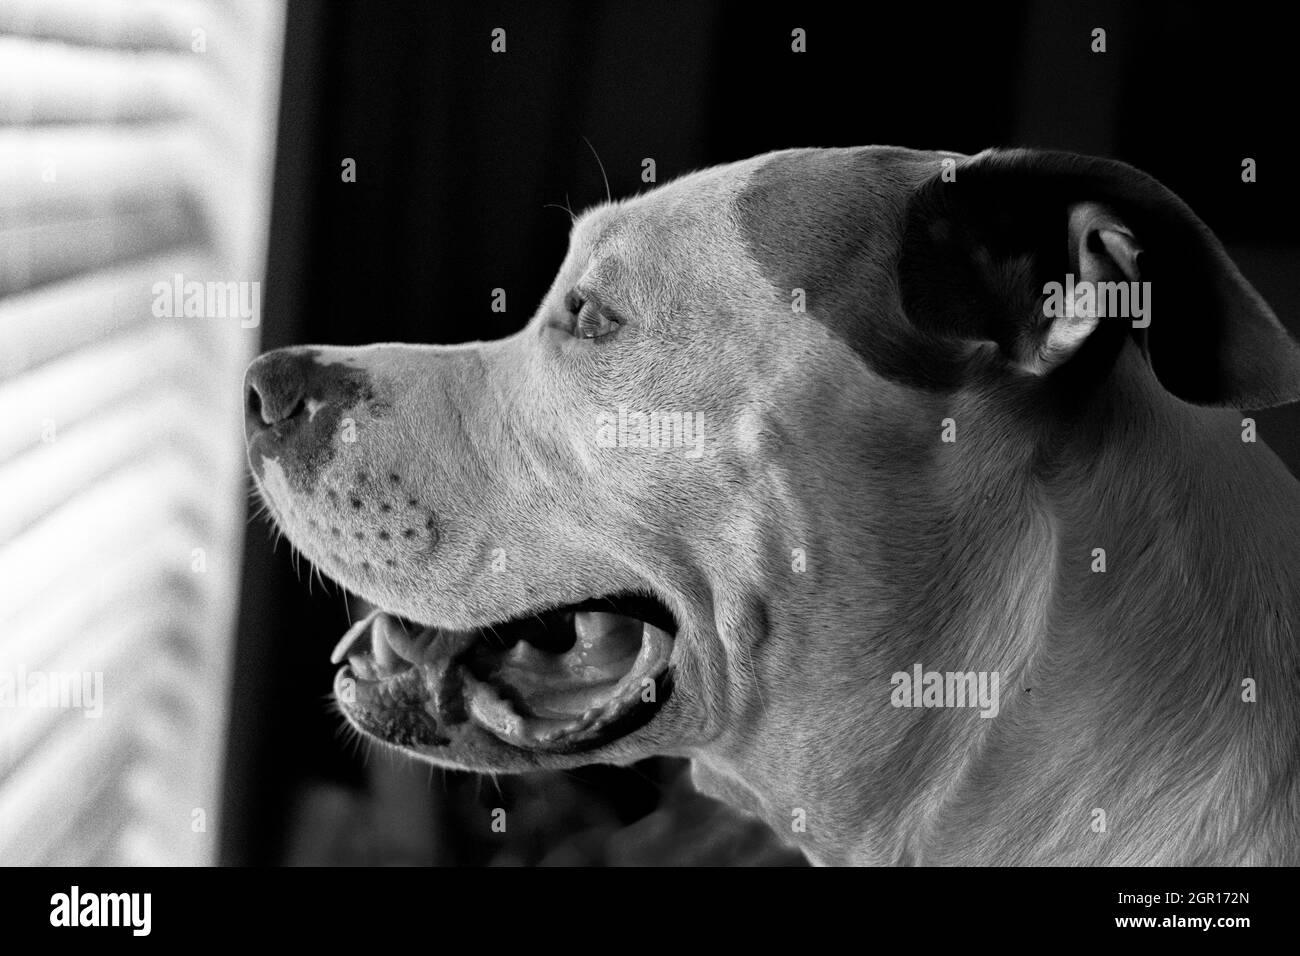 Gros plan d'un chien mixte (American Staffordshire Pit Bull Terrier et American Pit Bull Terrier) (Canis lupus familiaris) en regardant par la fenêtre Banque D'Images